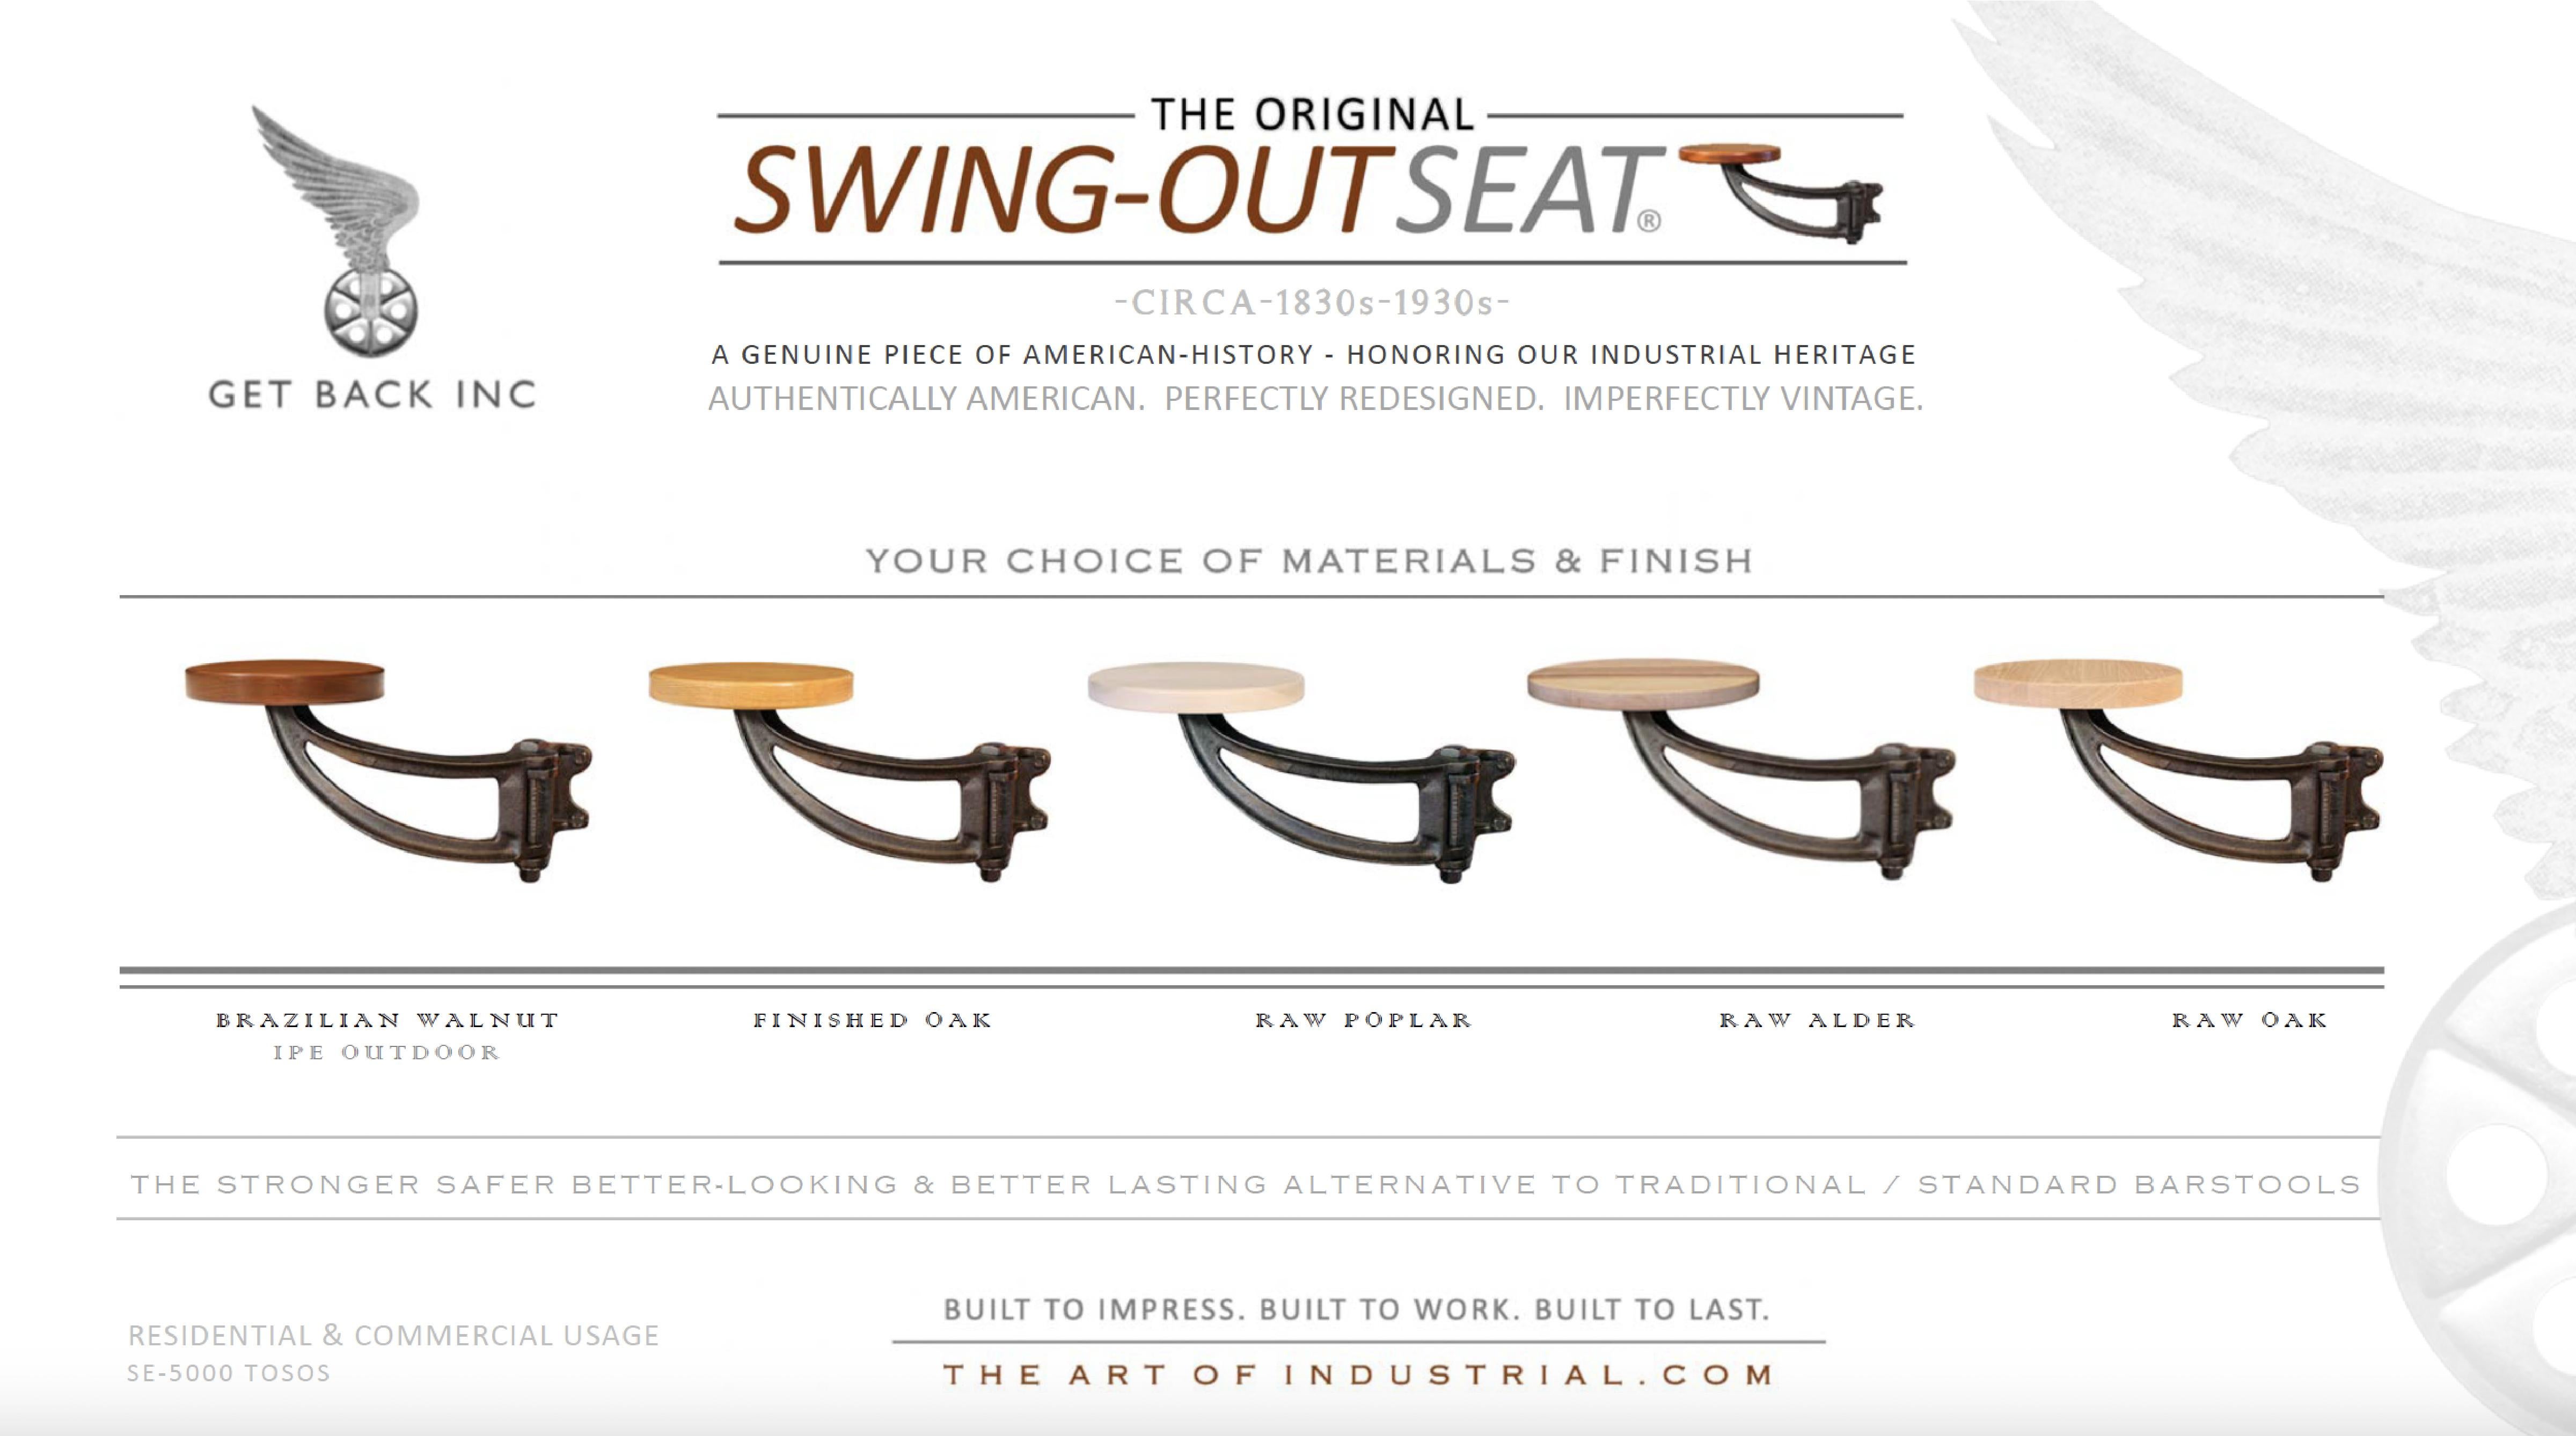 Der Get Back Original Swing-Out Seat wird jetzt mit einem fertigen Eichensitz mit 12